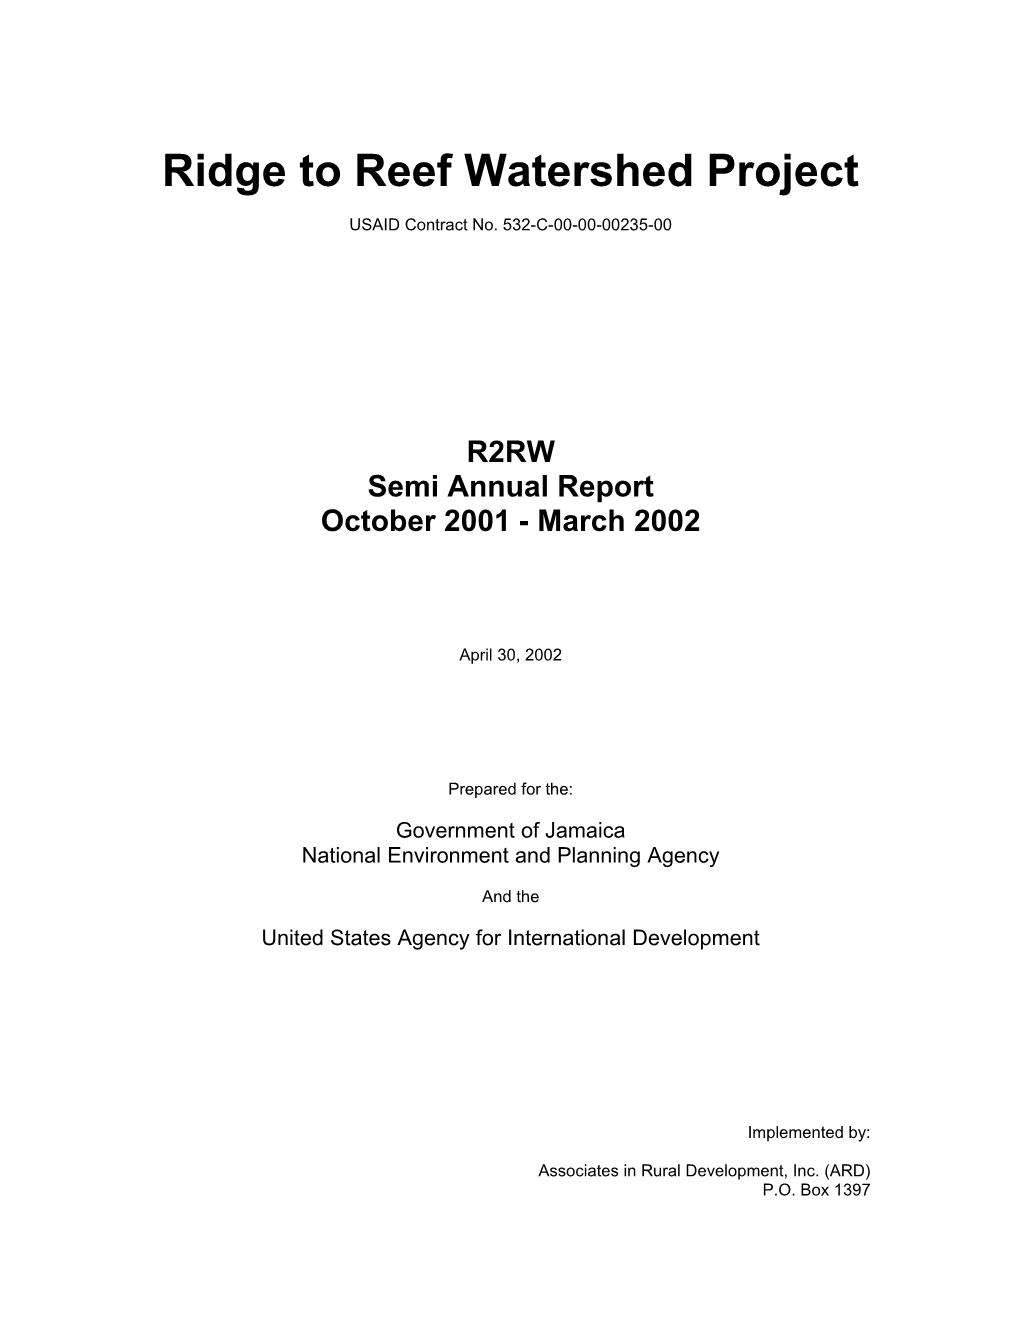 Outline R2RW Semi-Annual Report